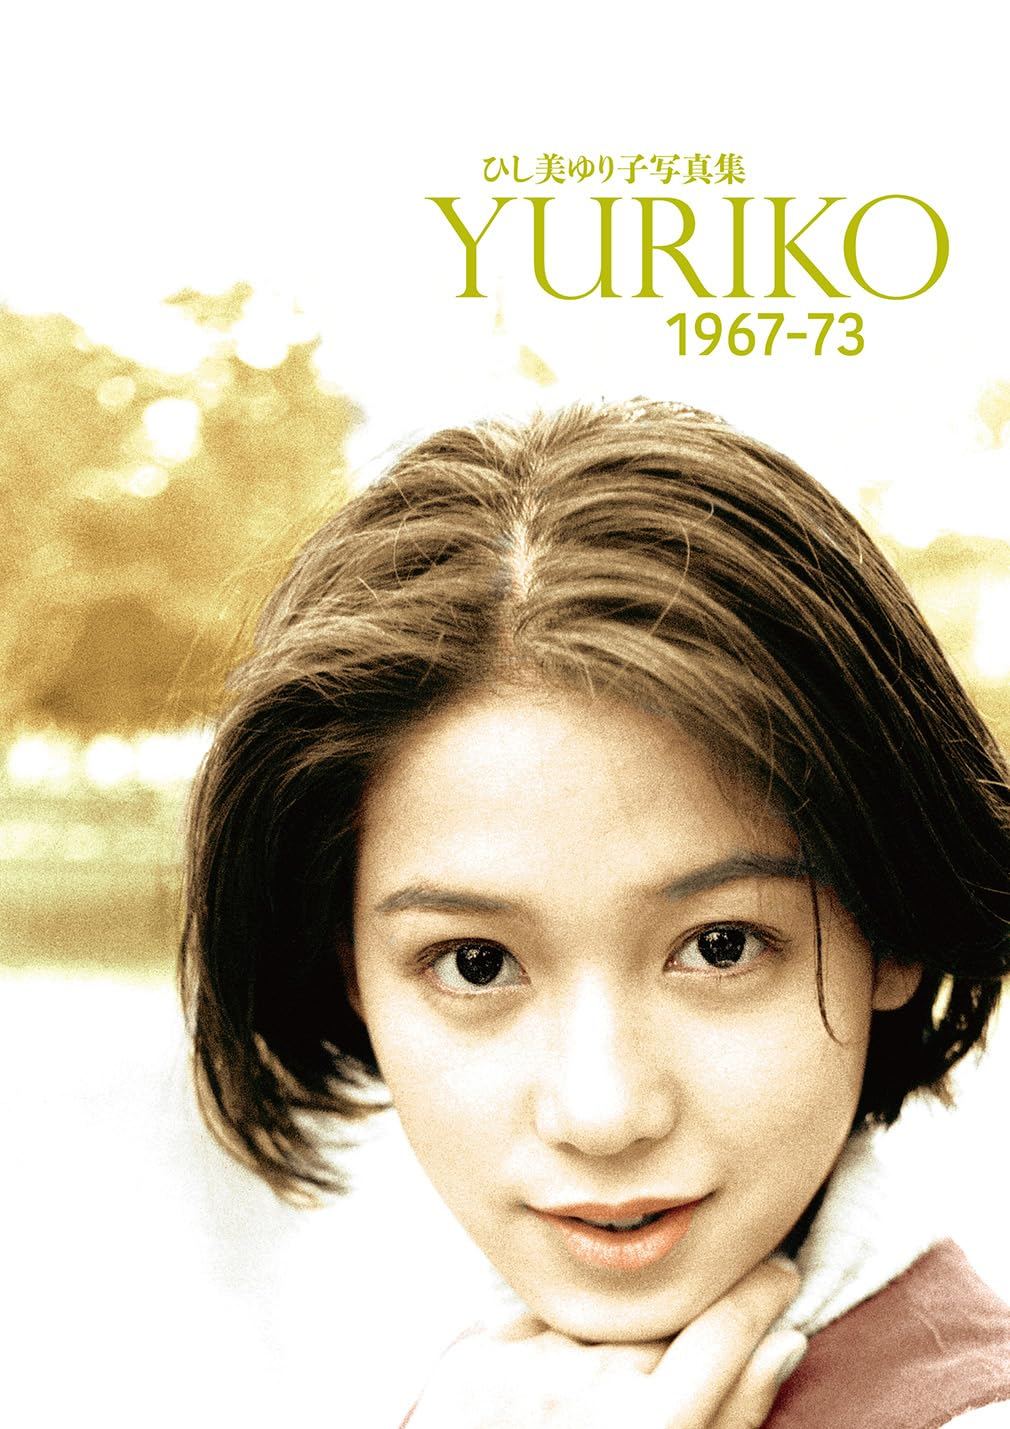 Yuriko Hishimi Photobook Yuriko 1967-73